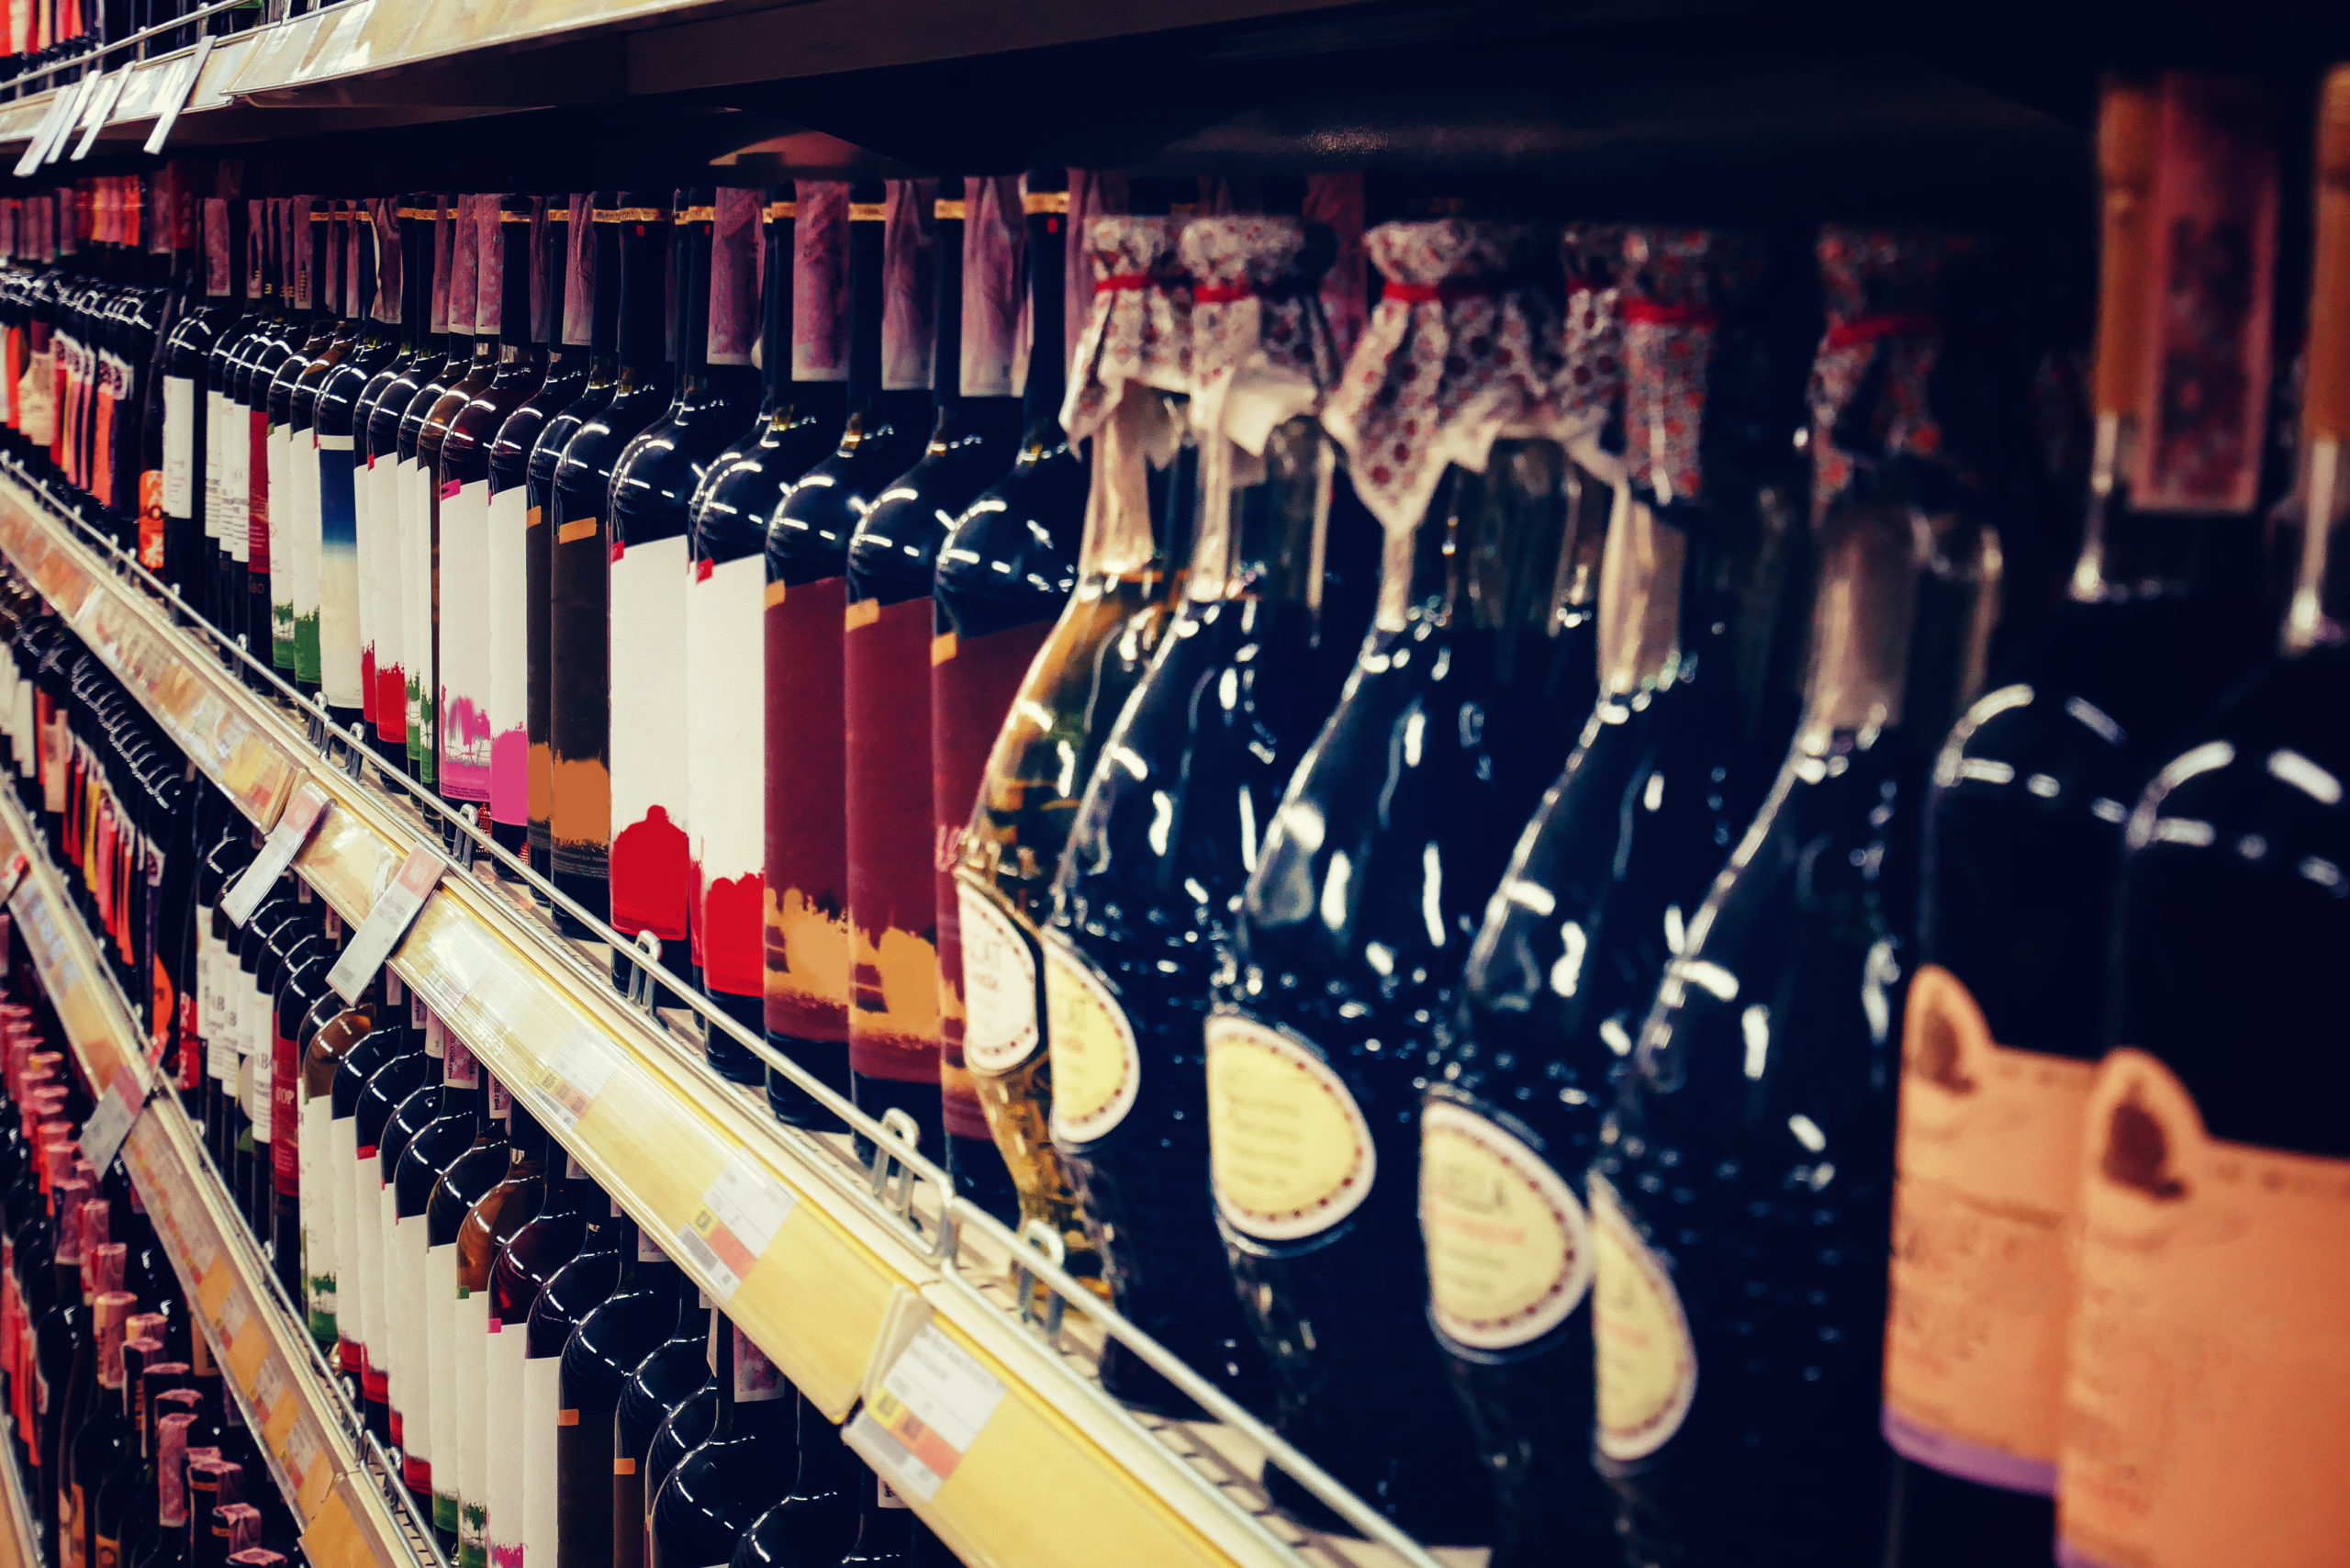 Wine bottles in shop